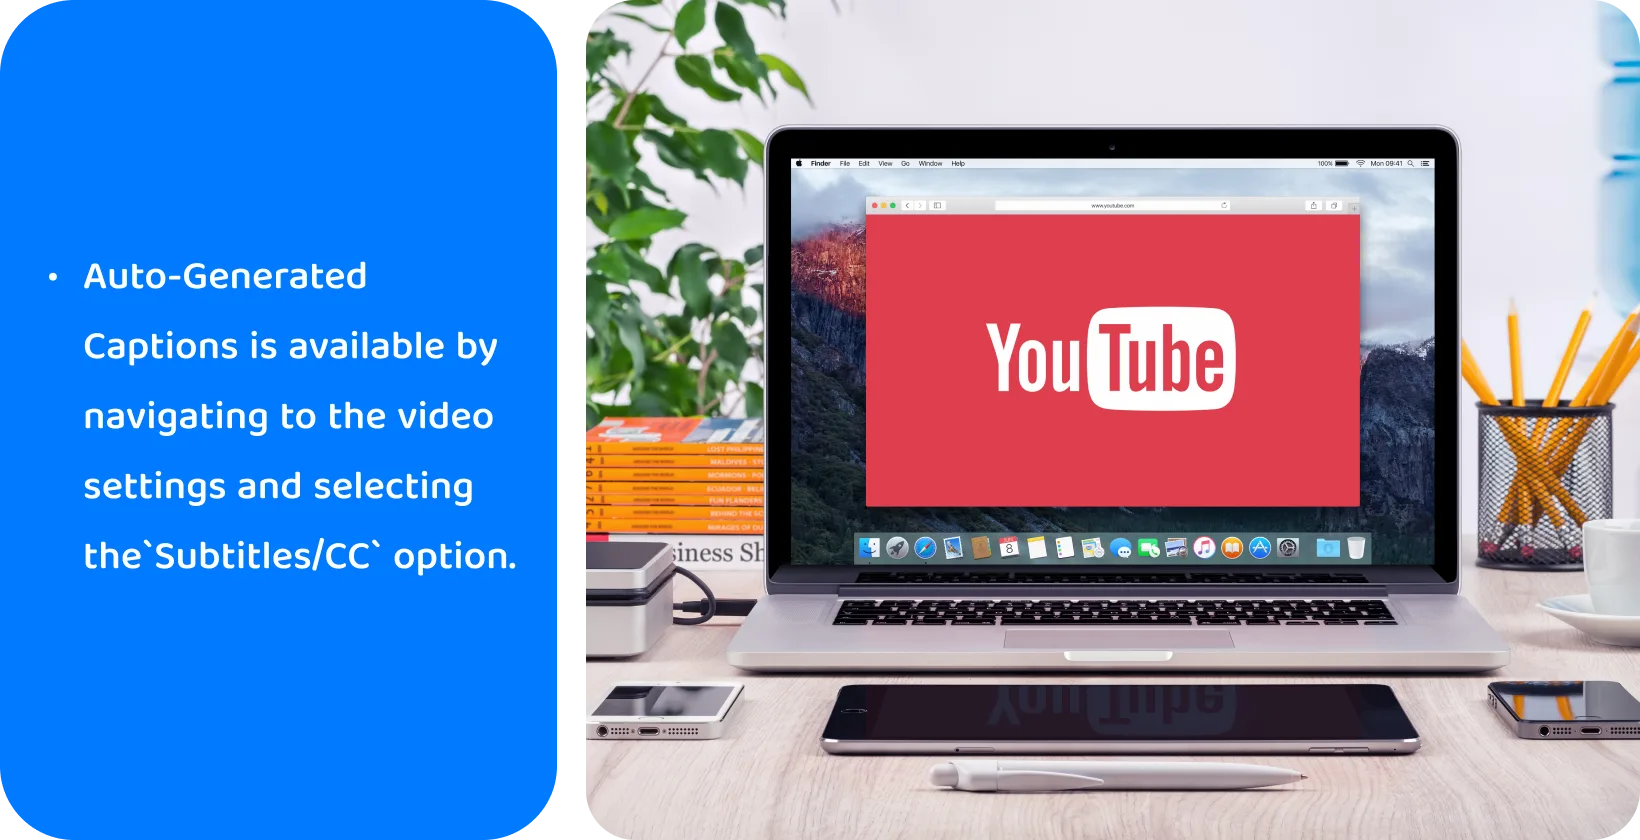 YouTube på en bärbar datorskärm, främja användningen av automatiskt genererade bildtexter för videotillgänglighet och SEO.